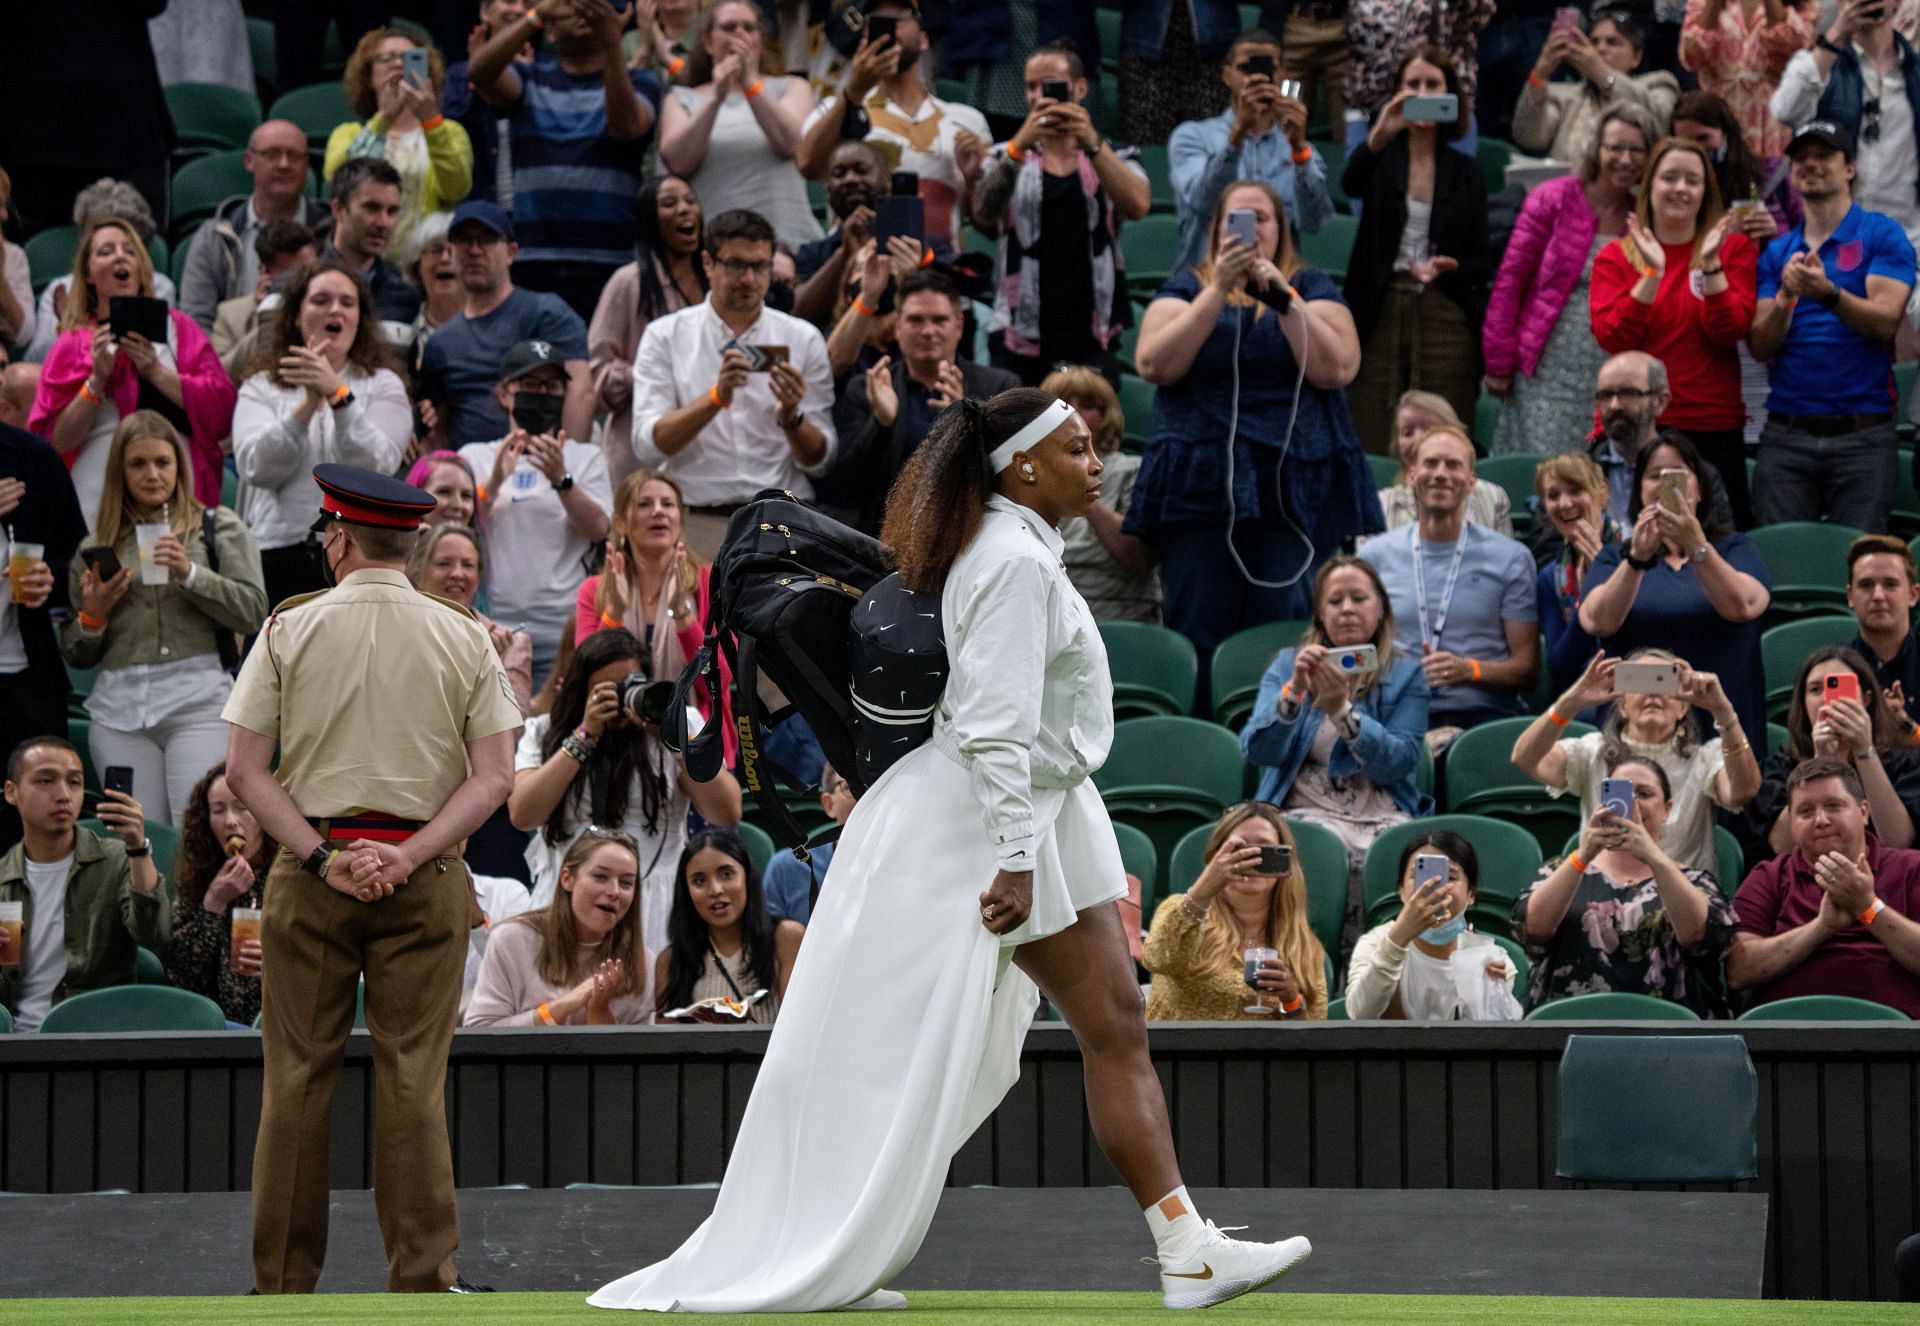 Serena Williams has six titles at the US Major